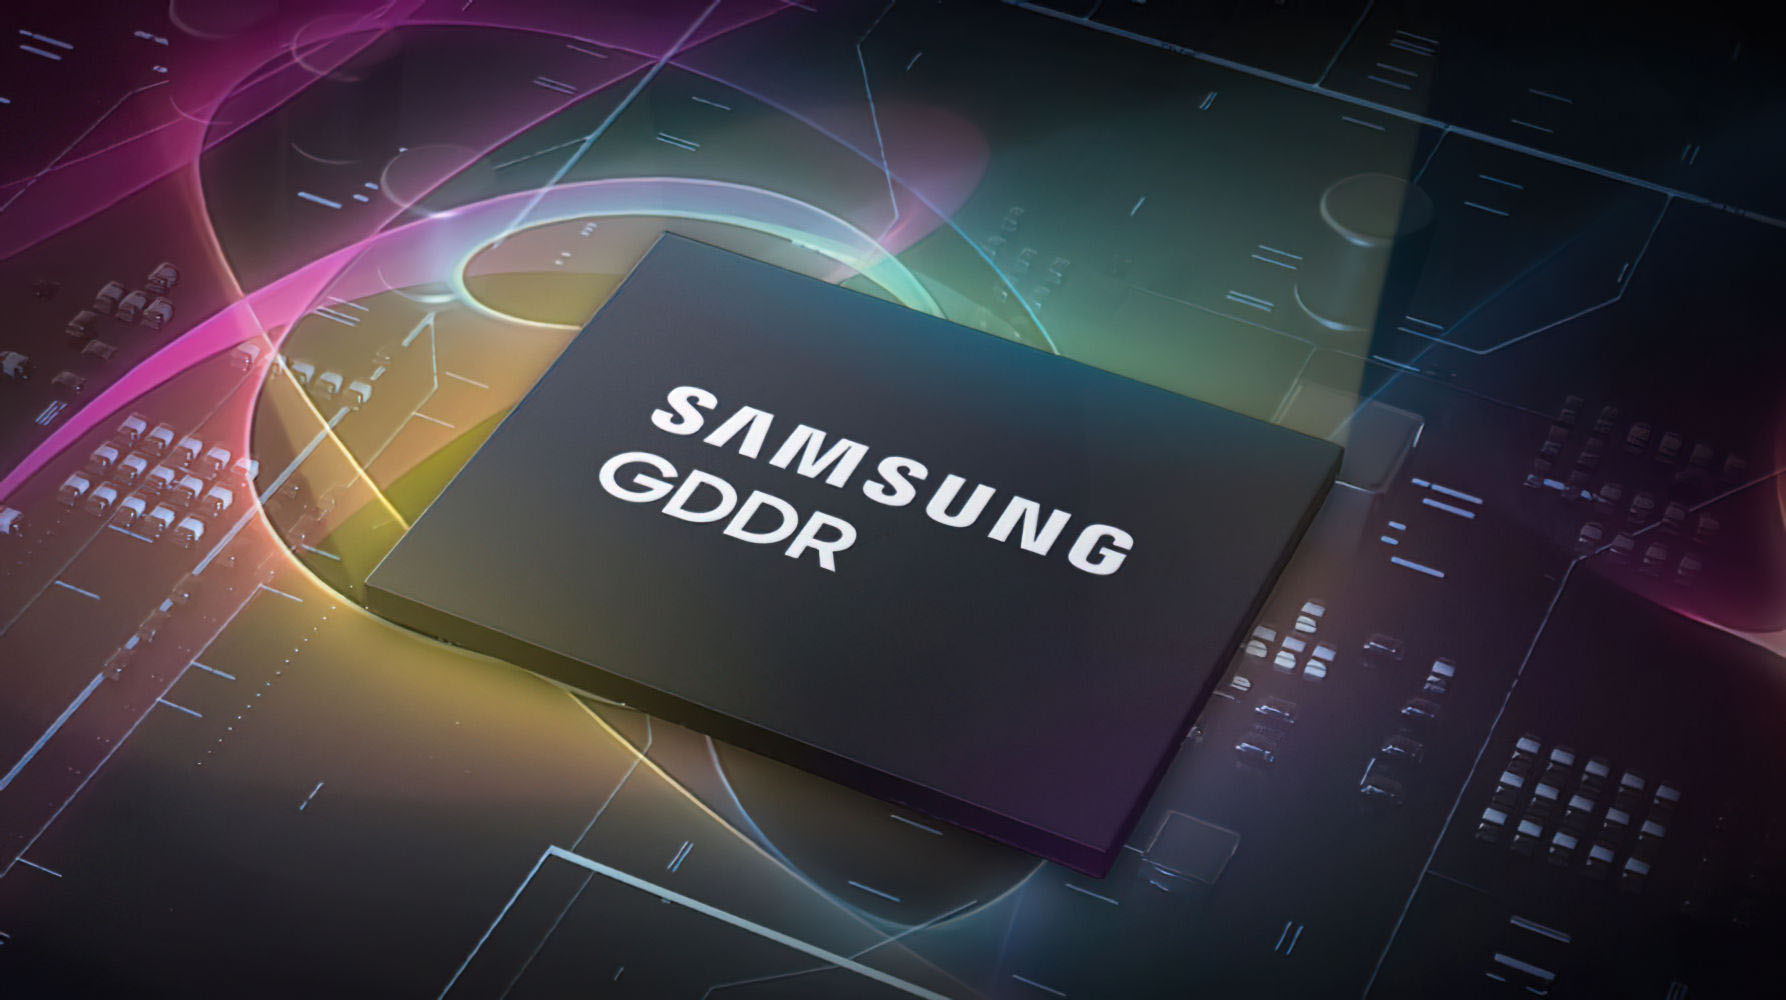 Samsung-GDDR6-Hero.jpg